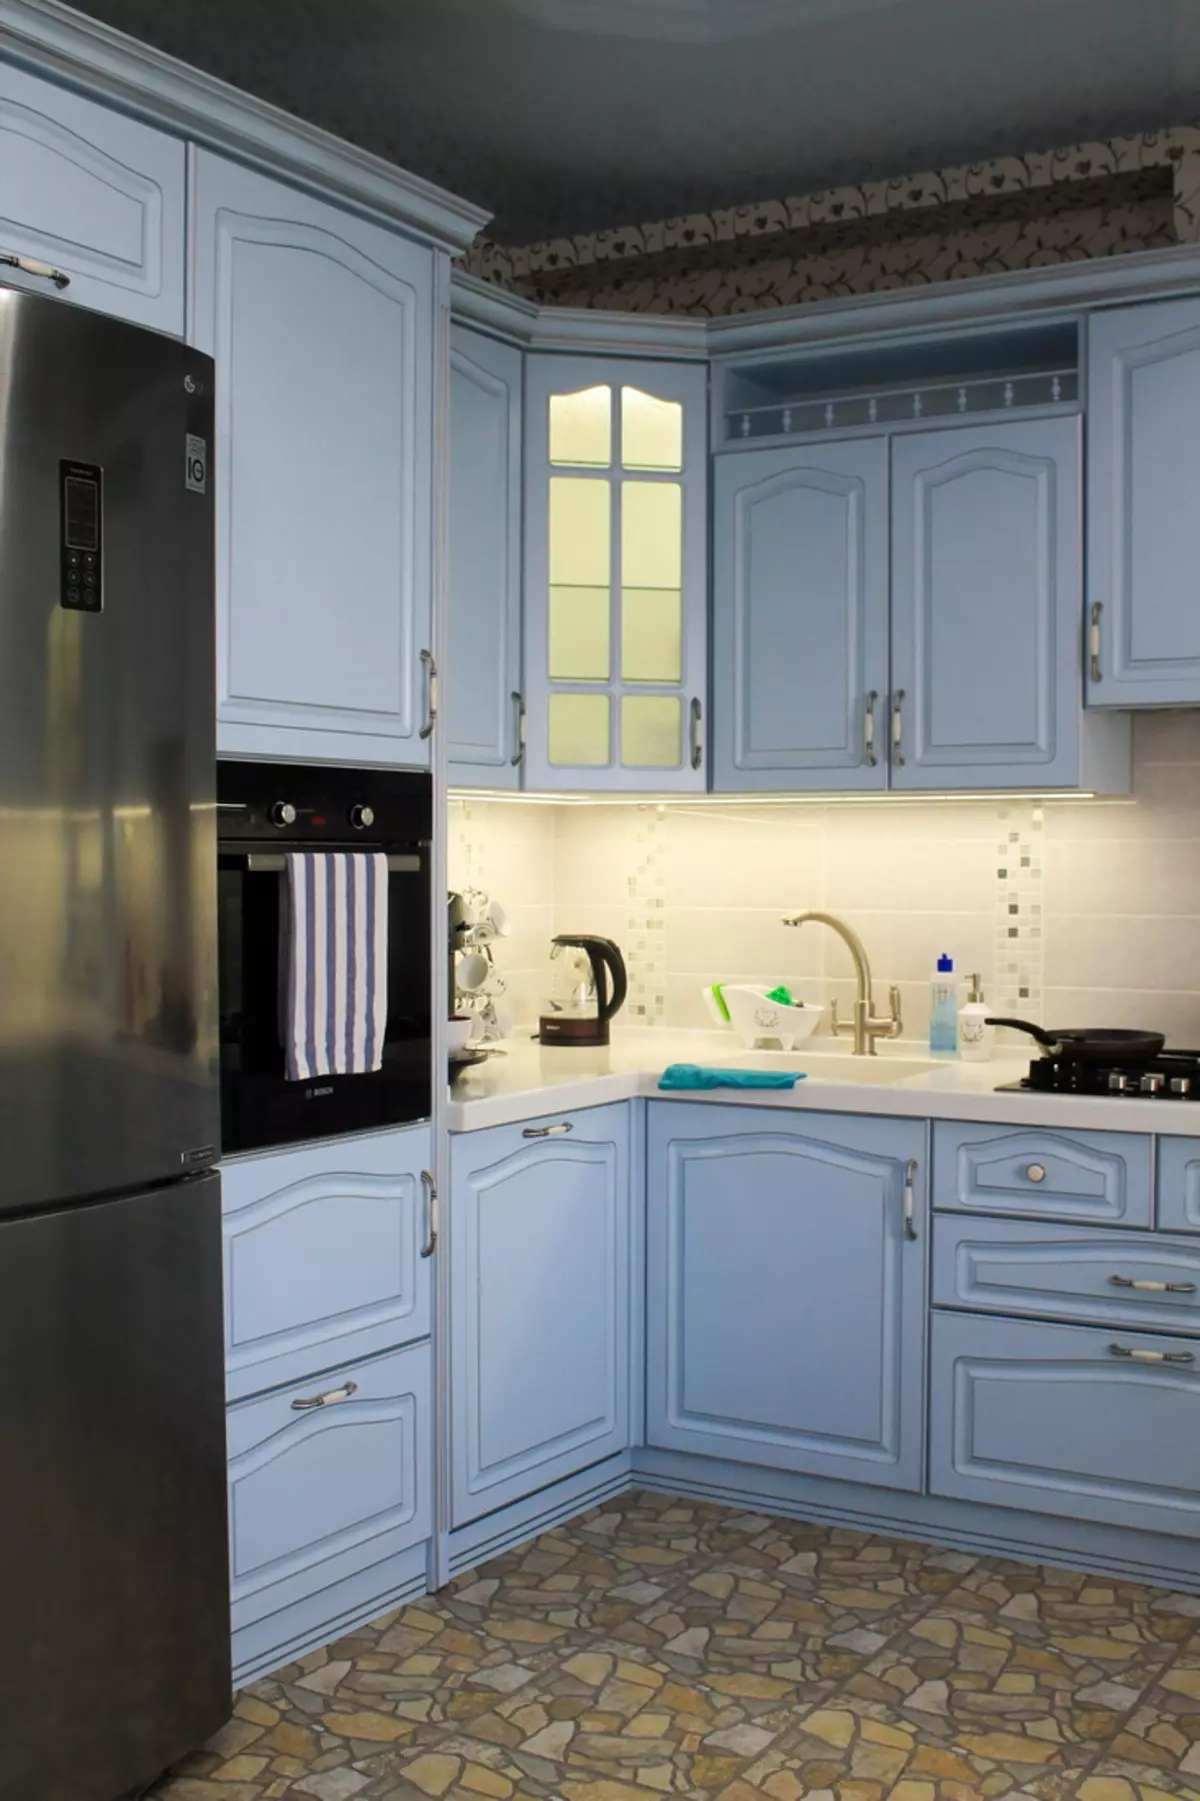 藍廚房（82張照片）：在藍色廚房套裝內部合併哪種顏色？淺藍色和深藍色色調的廚房設計 9555_29